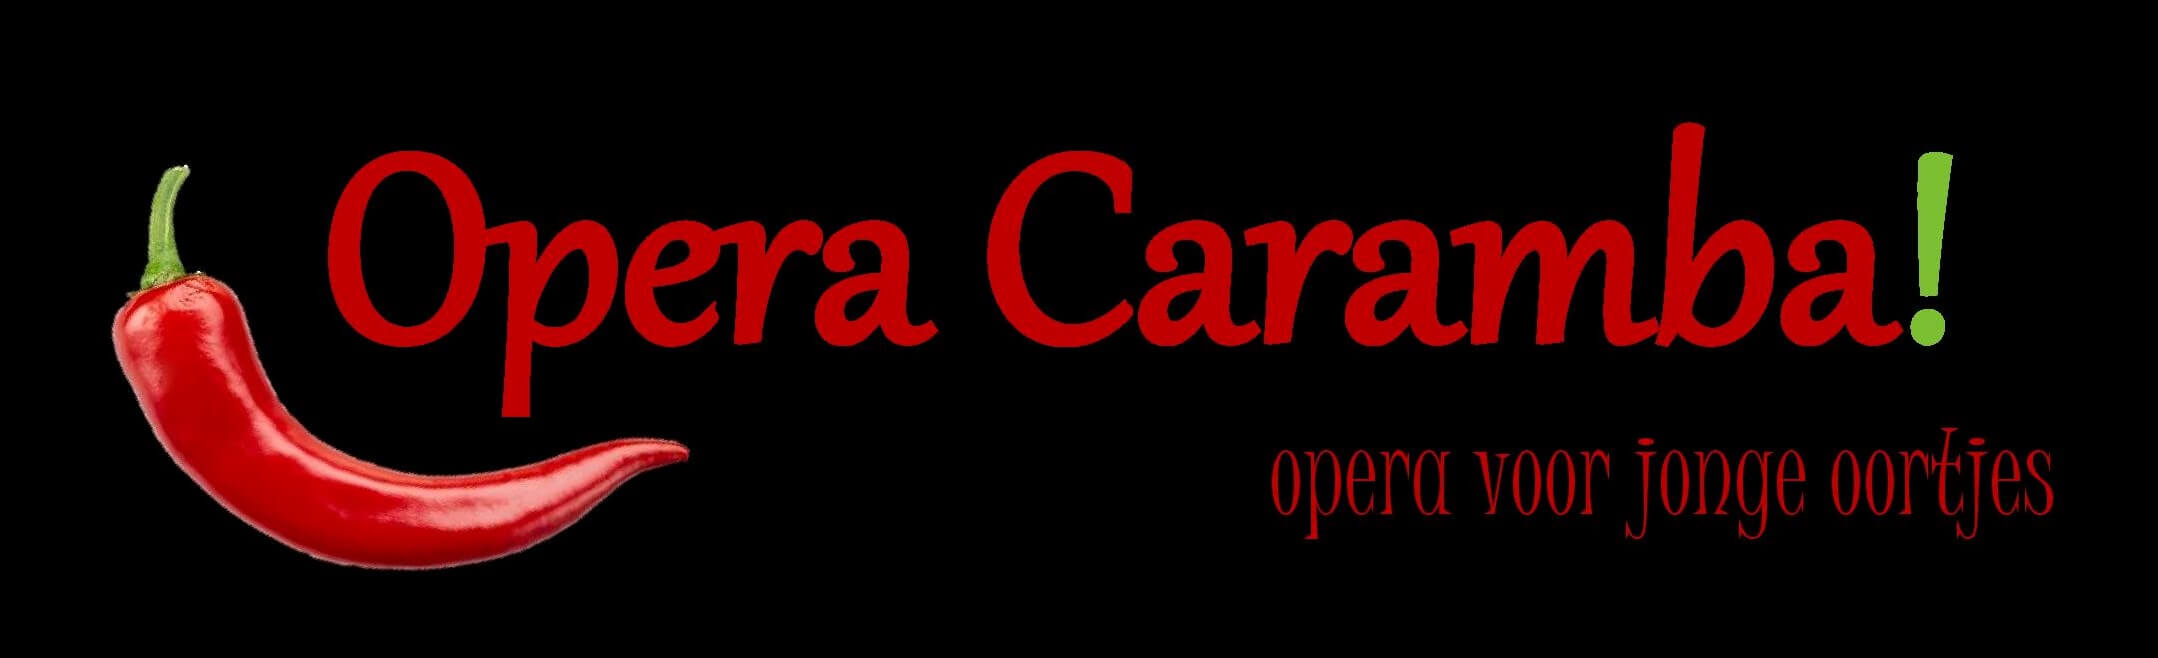 Opera Caramba